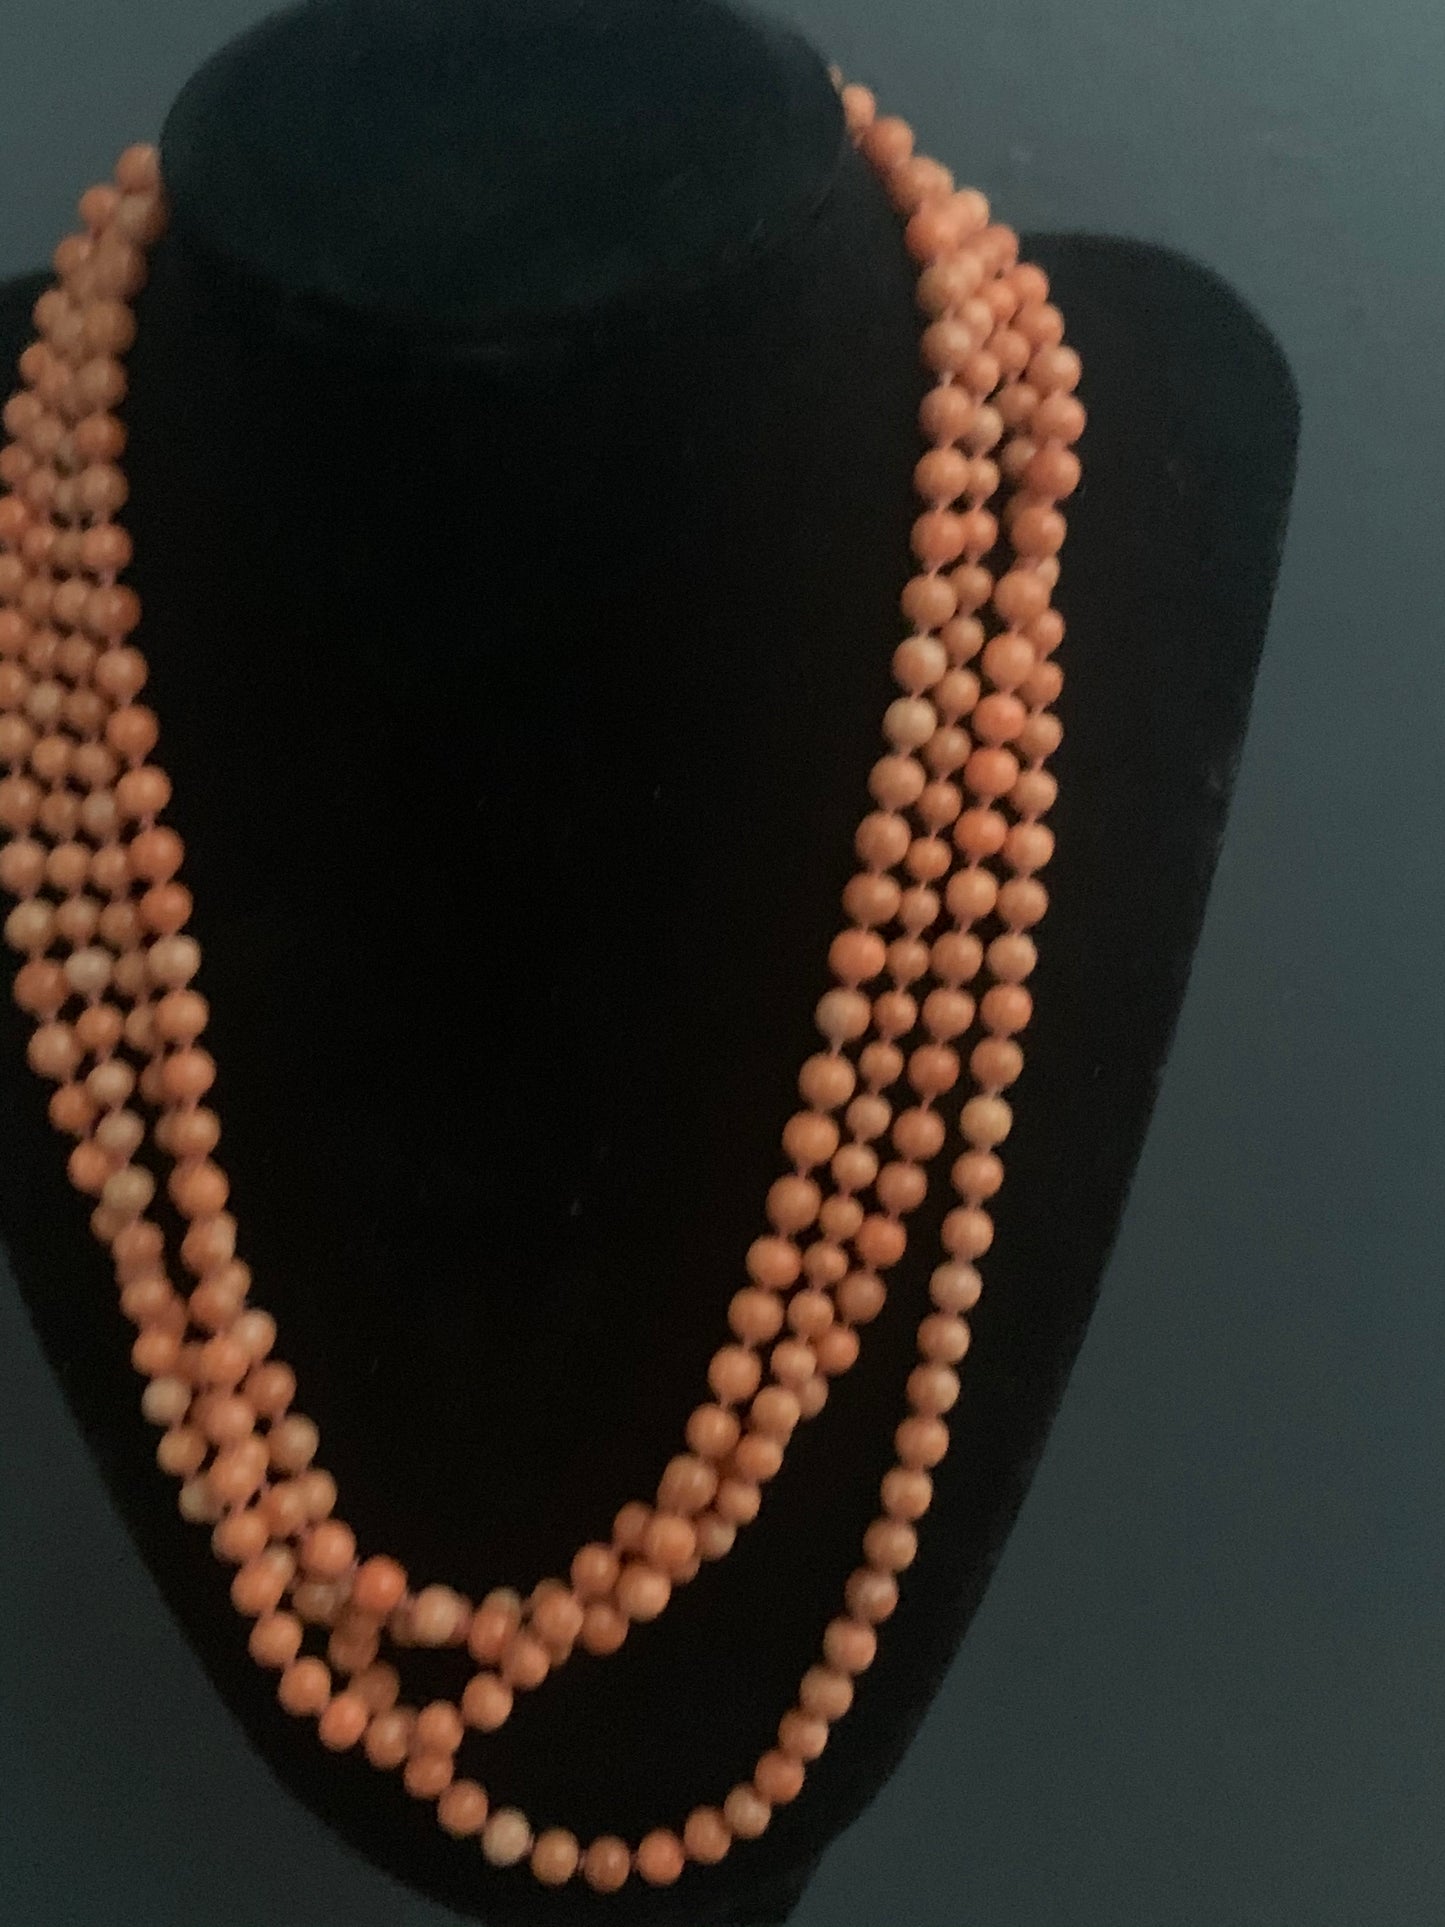 A vintage coral necklace.